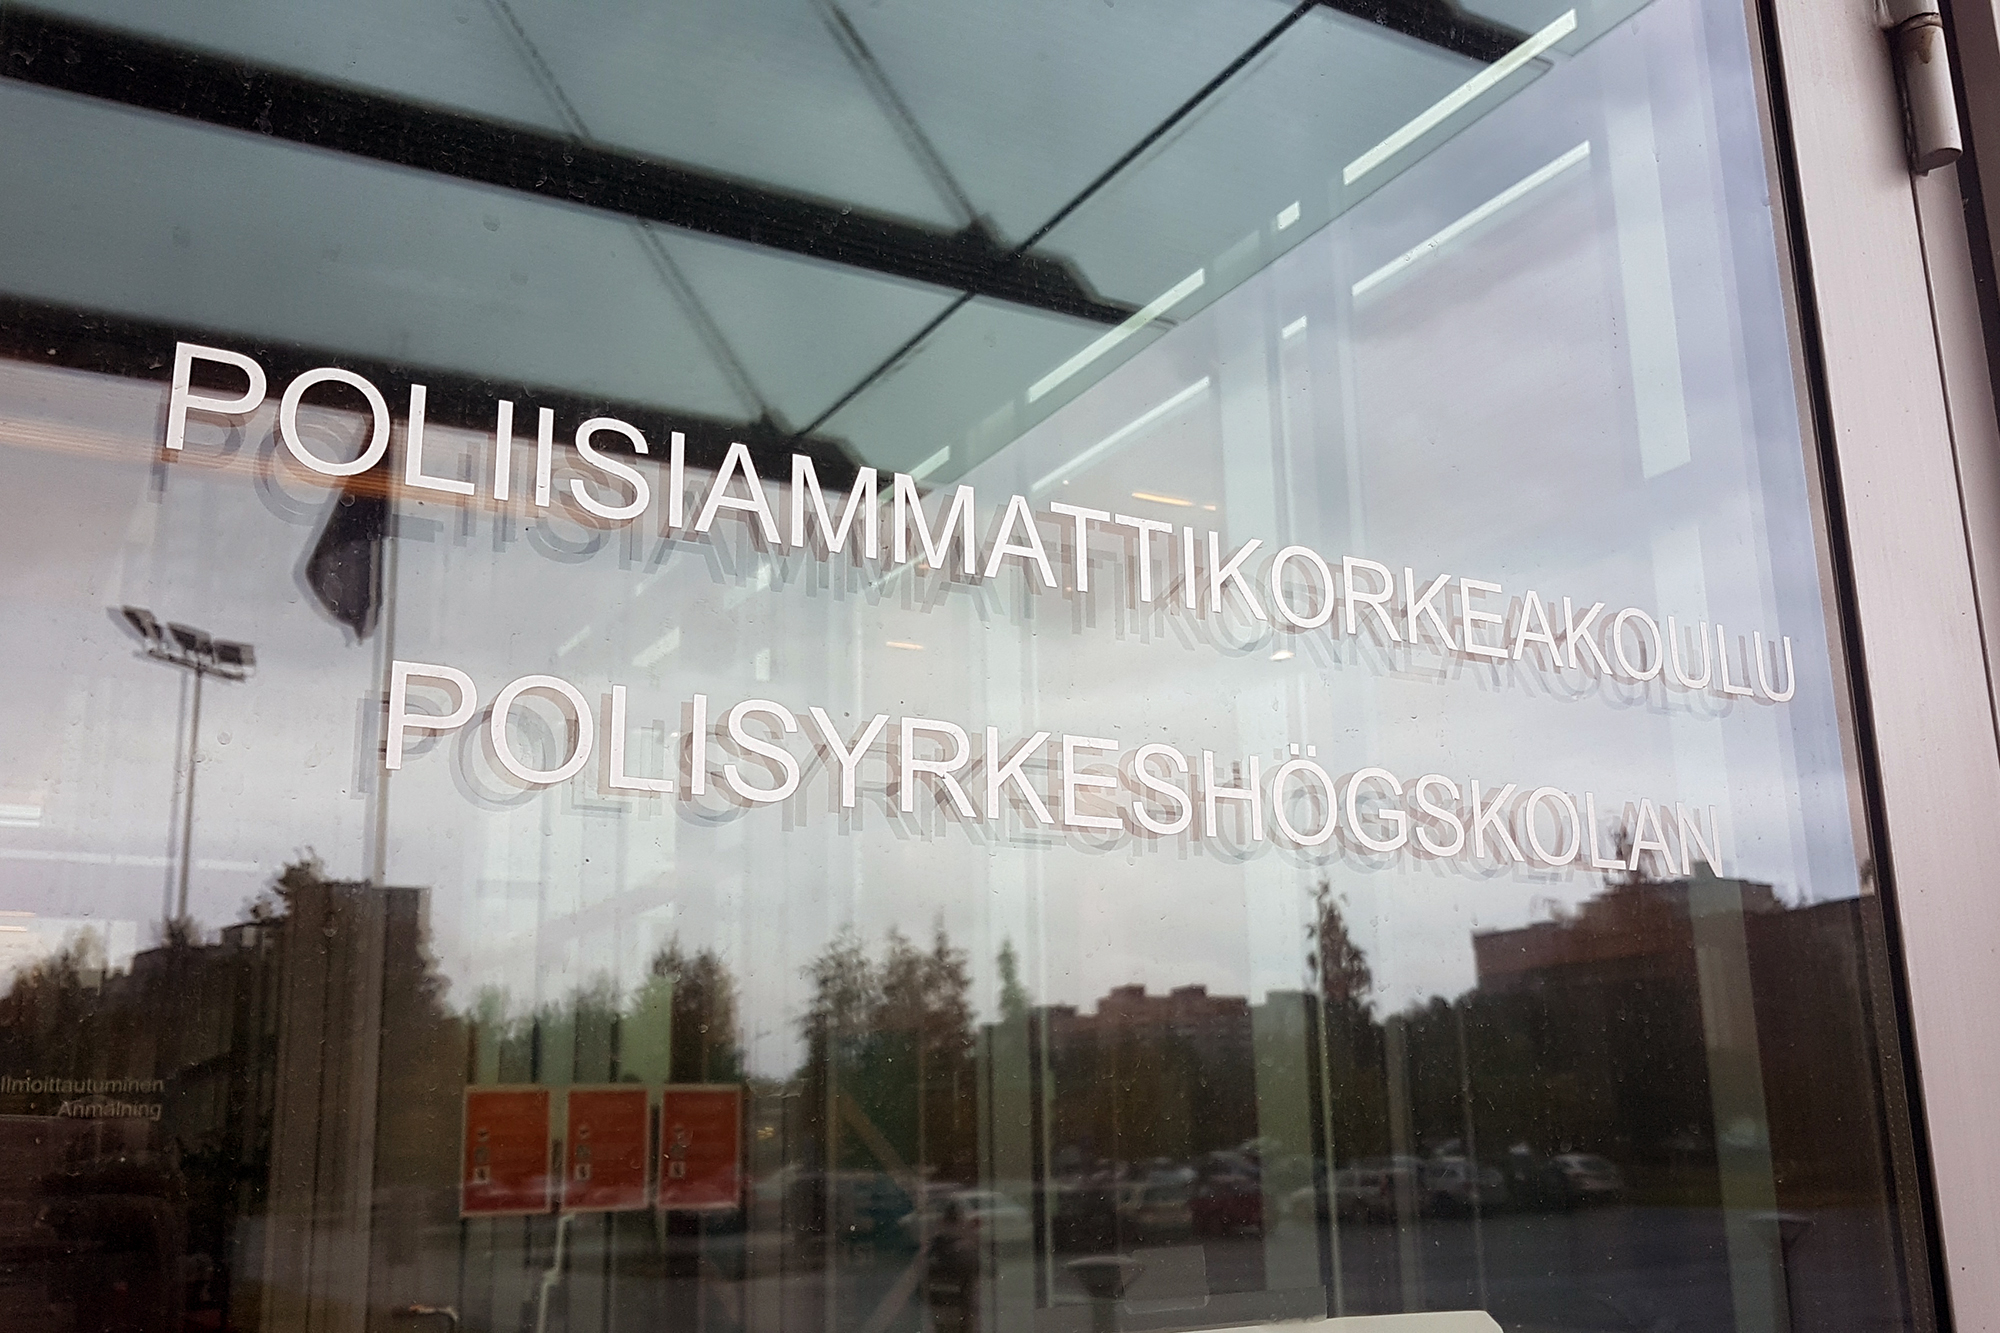 Polamks huvudglasdörr med texten Poliisiammattikorkeakoulu Polisyrkeshögskolan.